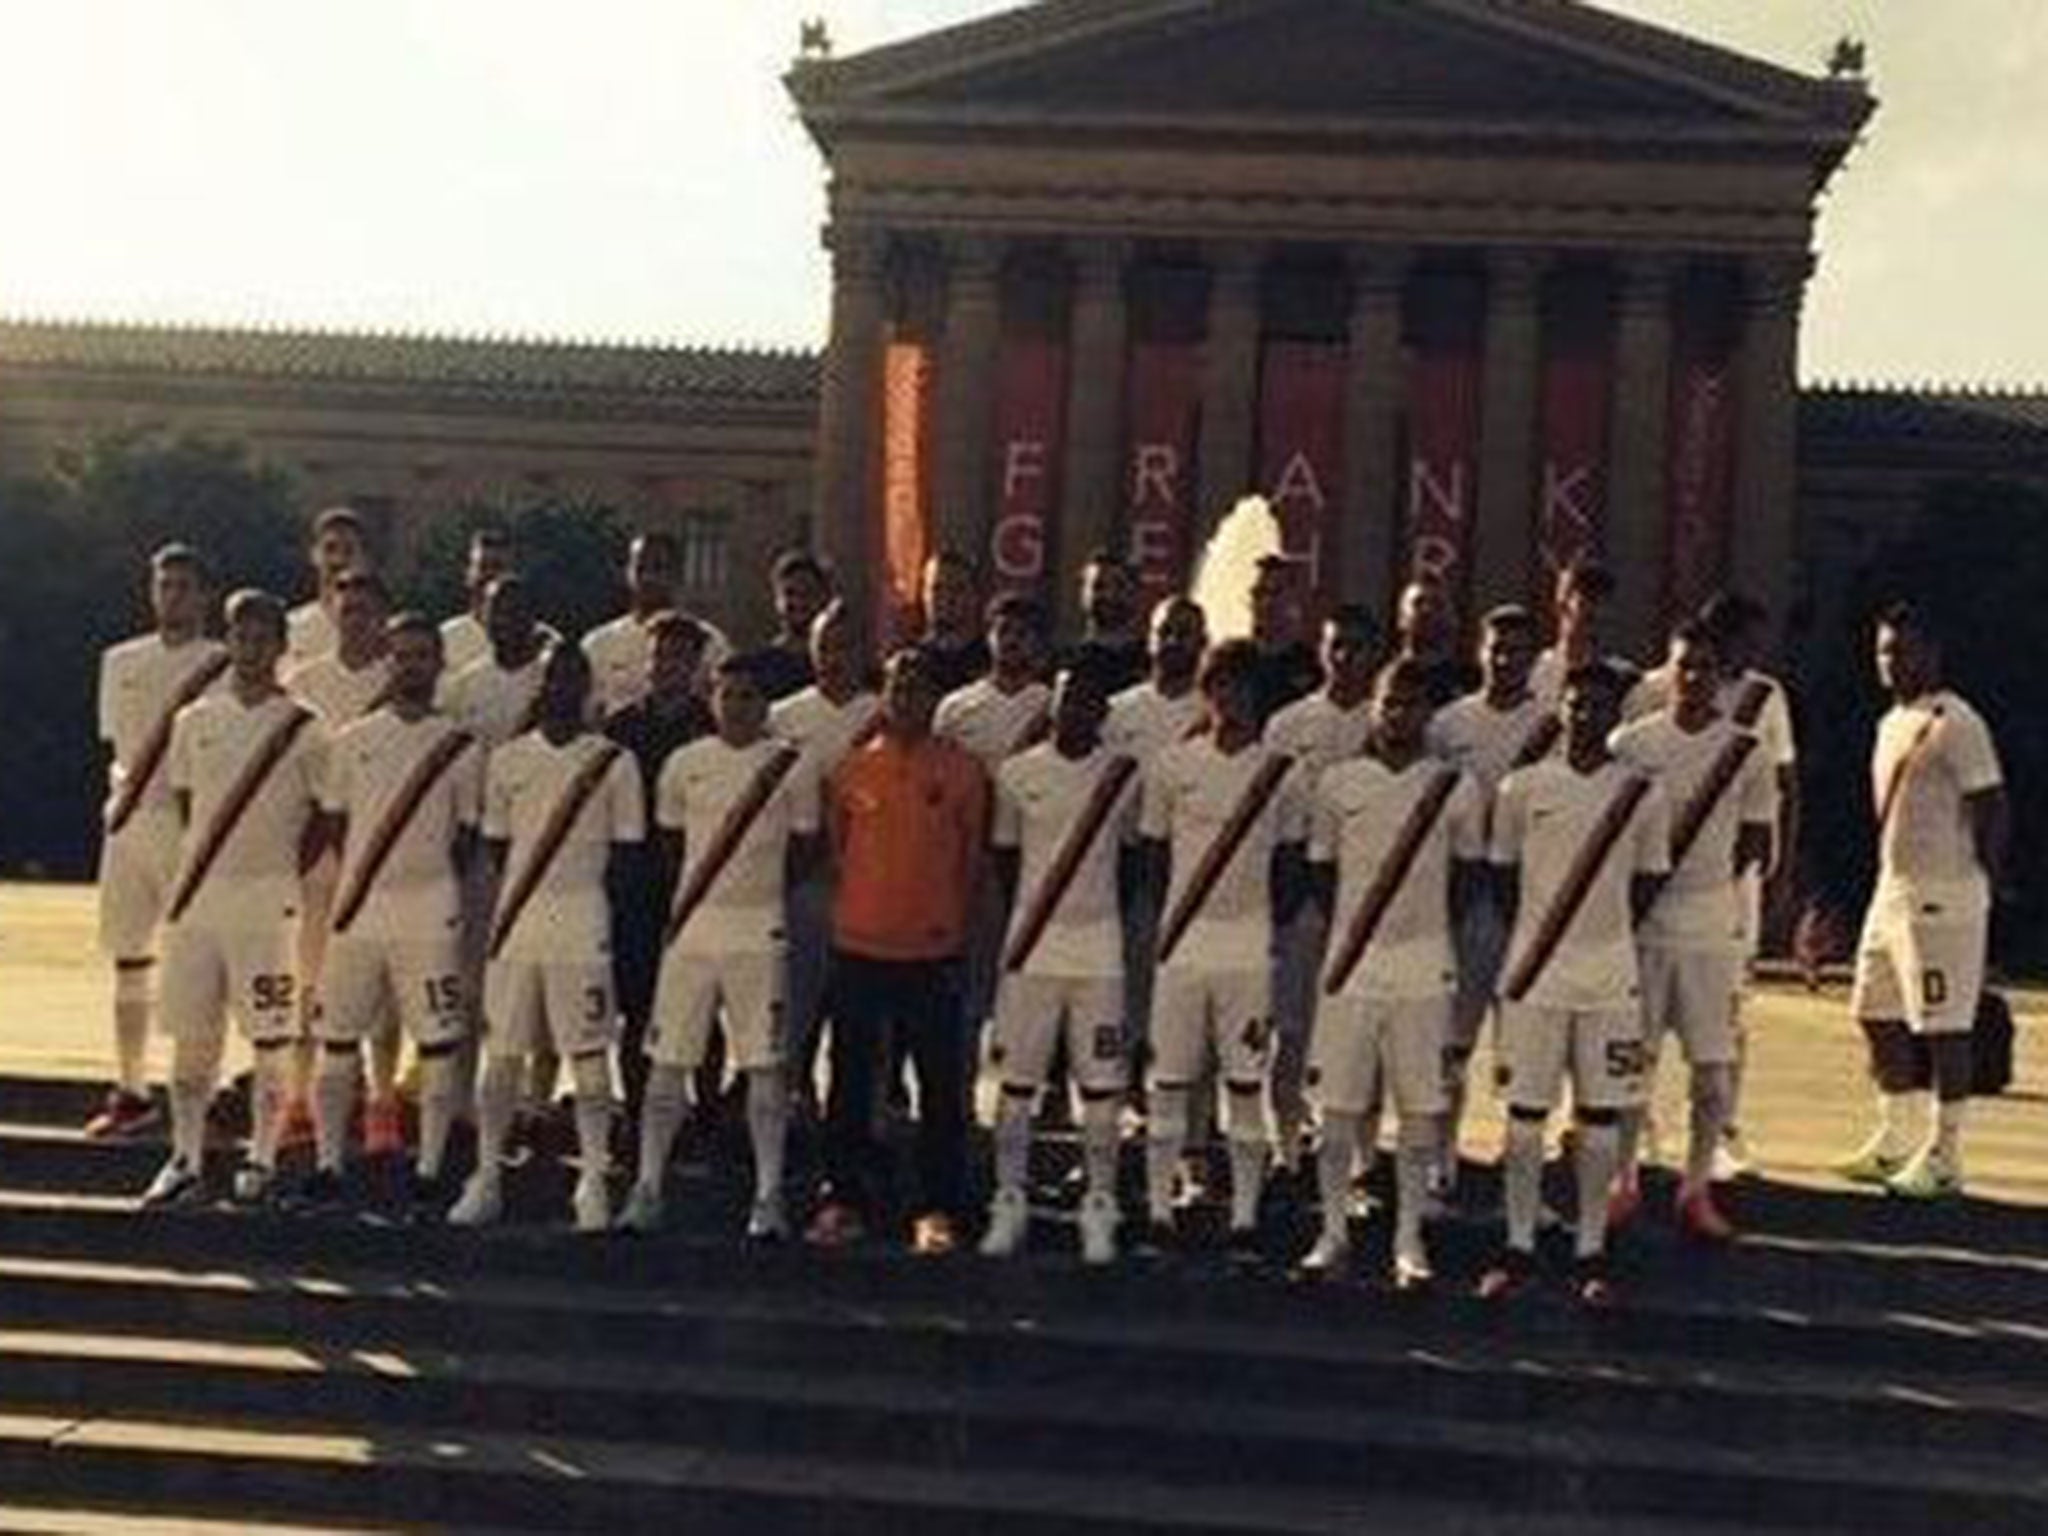 Francesco Totti mocks Ashley Cole in official Roma team photo